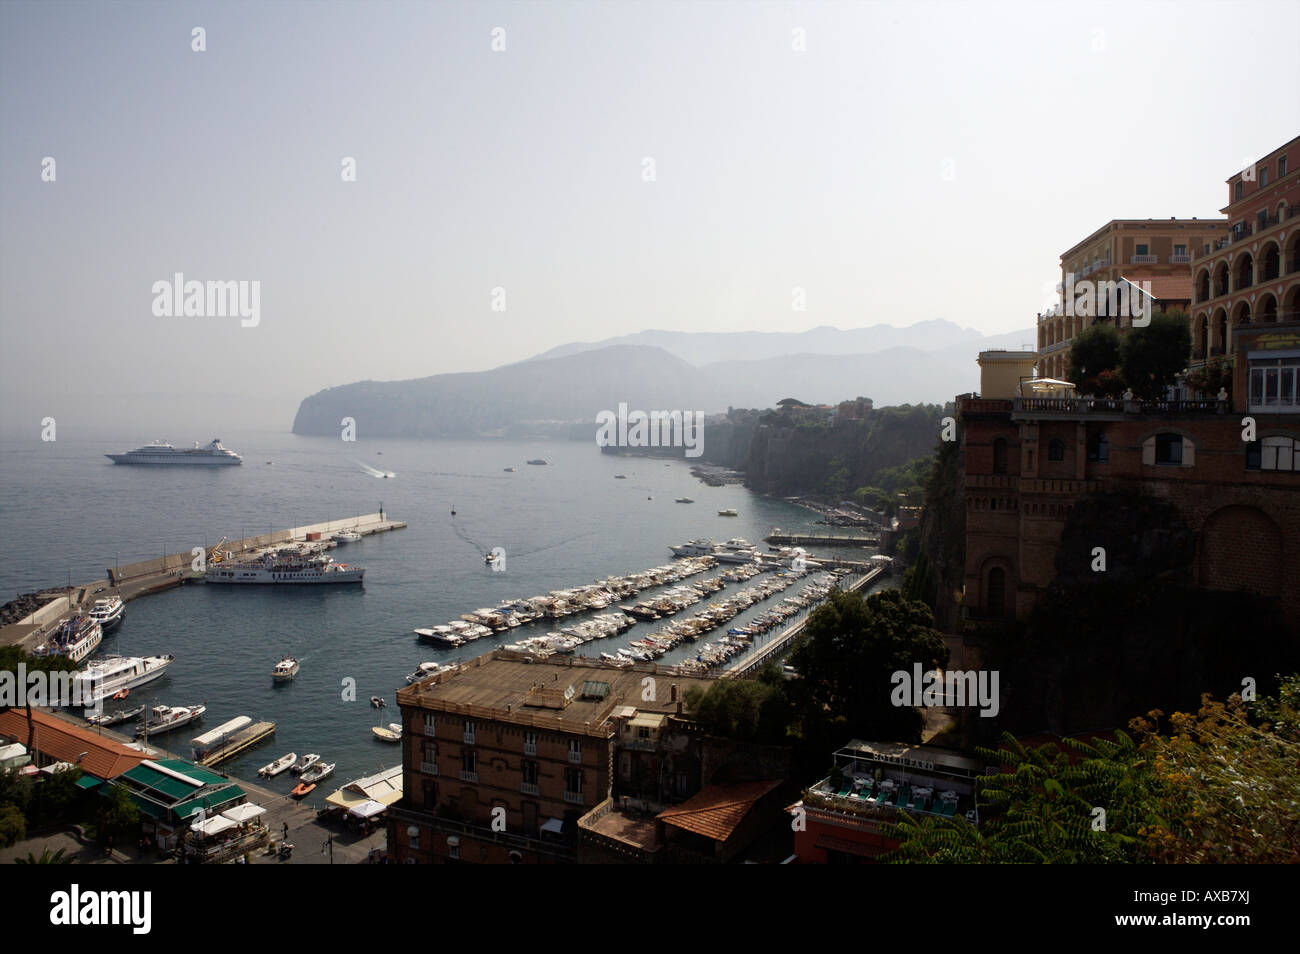 Ein Blick auf den Hafen von Sorrent mit einem Kreuzfahrtschiff in den Hintergrund und verschiedenen Hotels, Boote und Yachten im Vordergrund Stockfoto